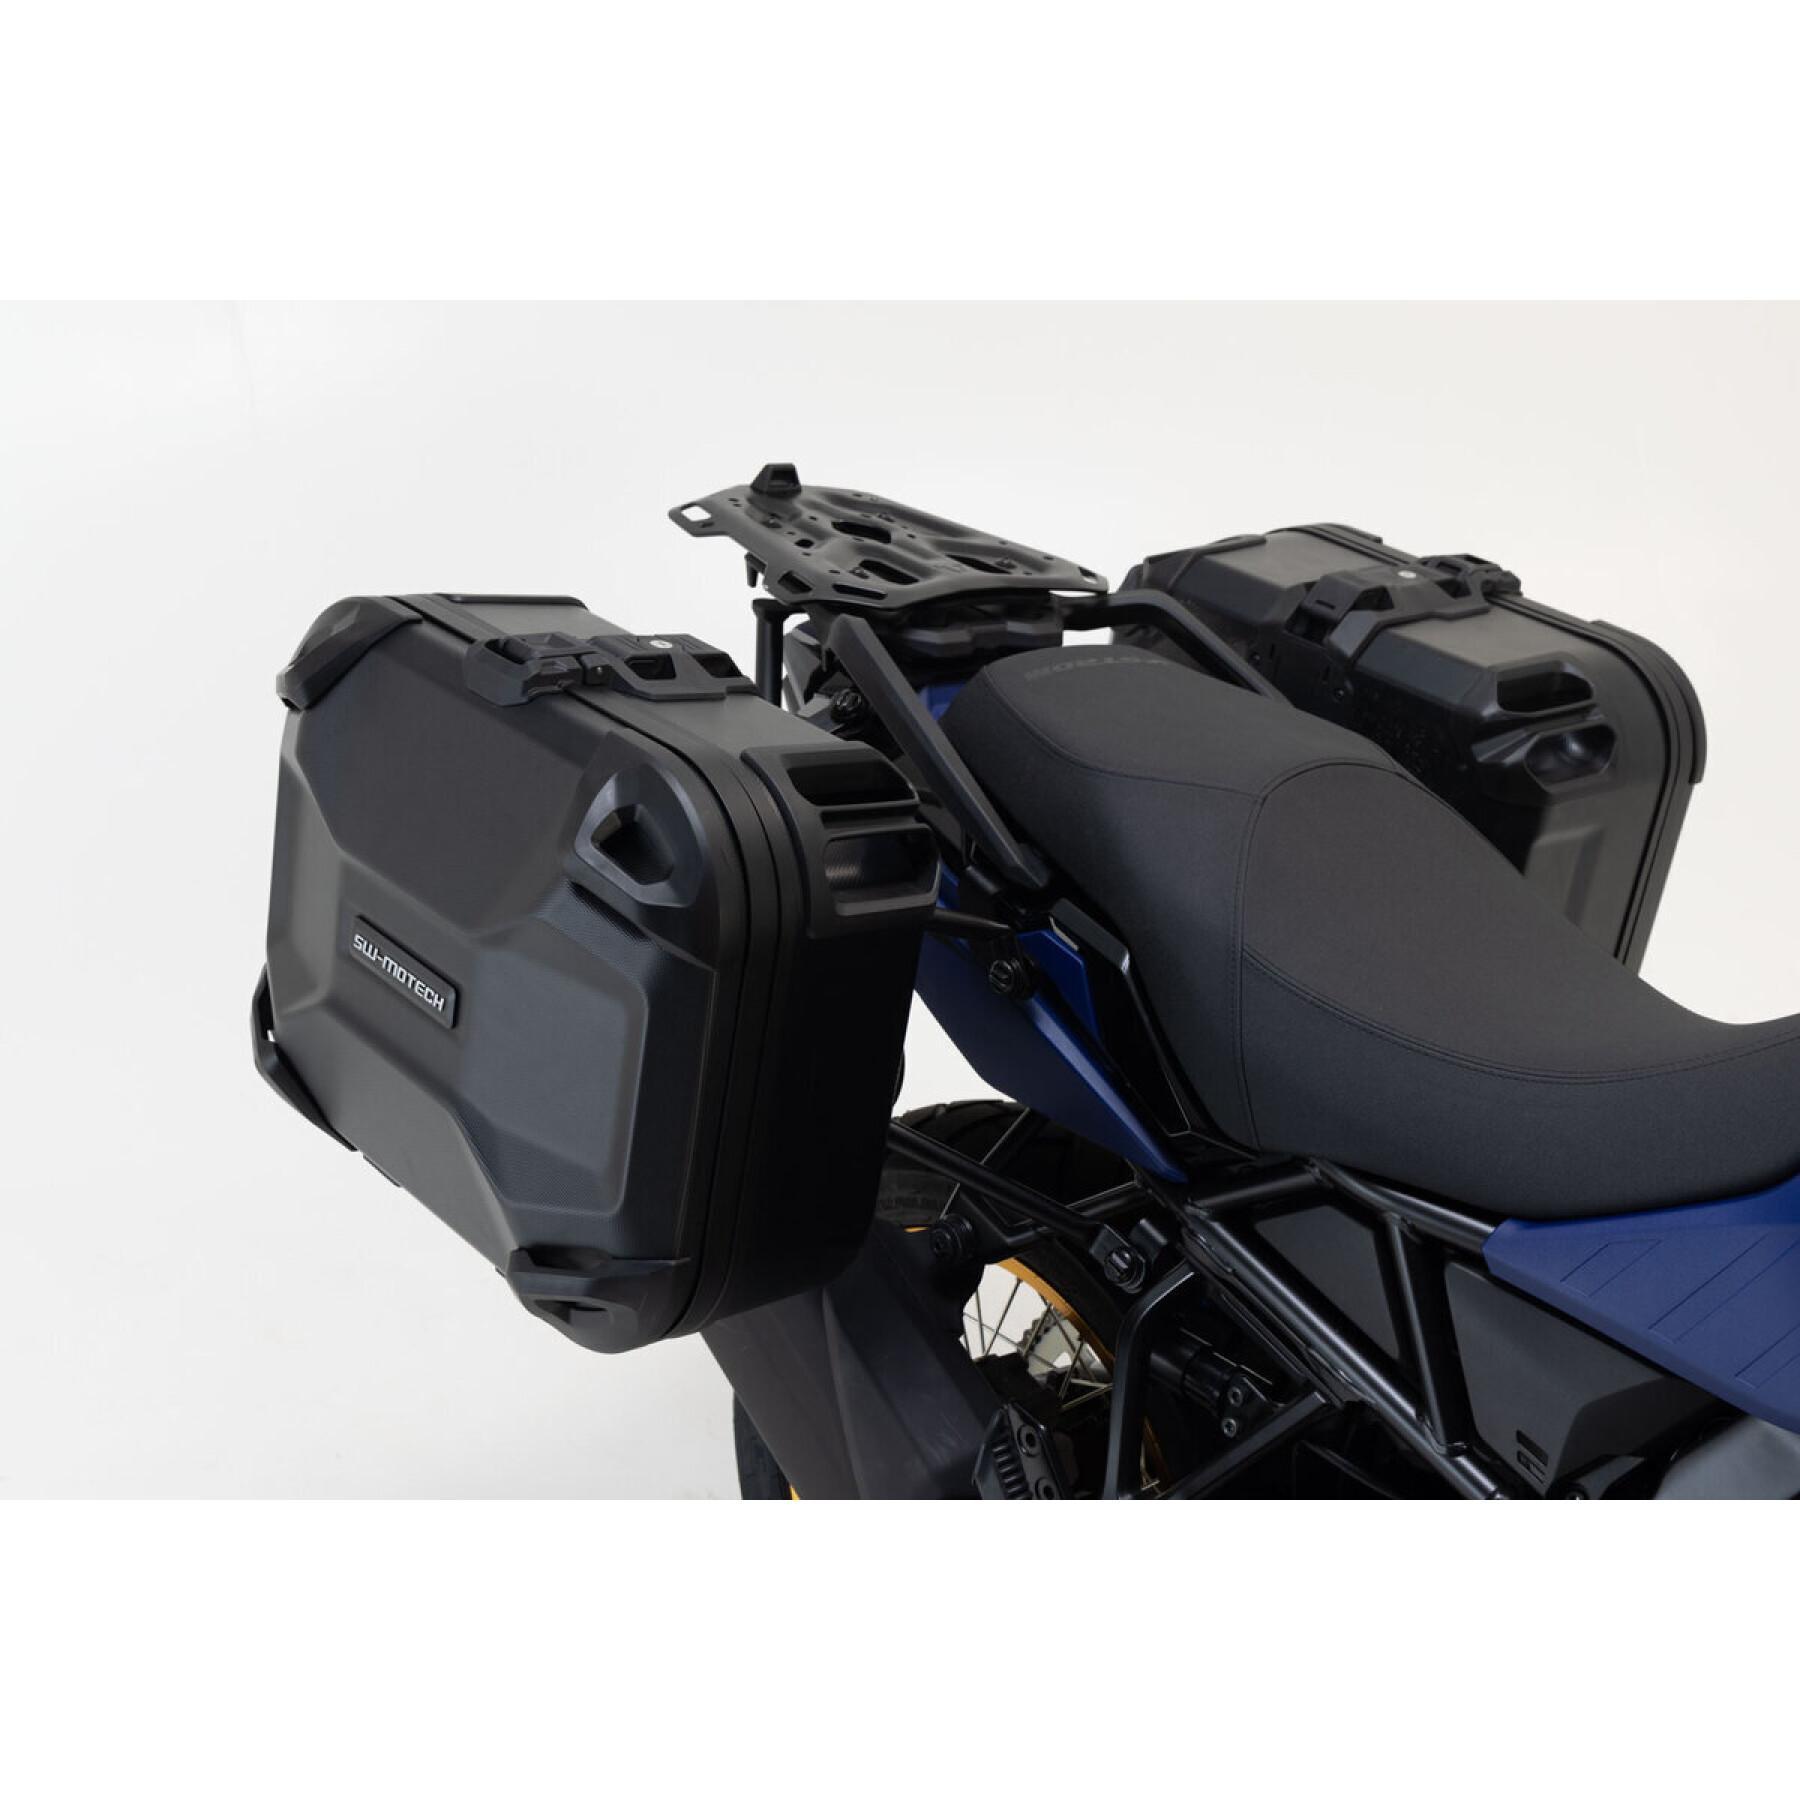 Système de valise latérale rigides moto SW-Motech DUSC MT-09 Tracer, Tracer 900/GT 82 L